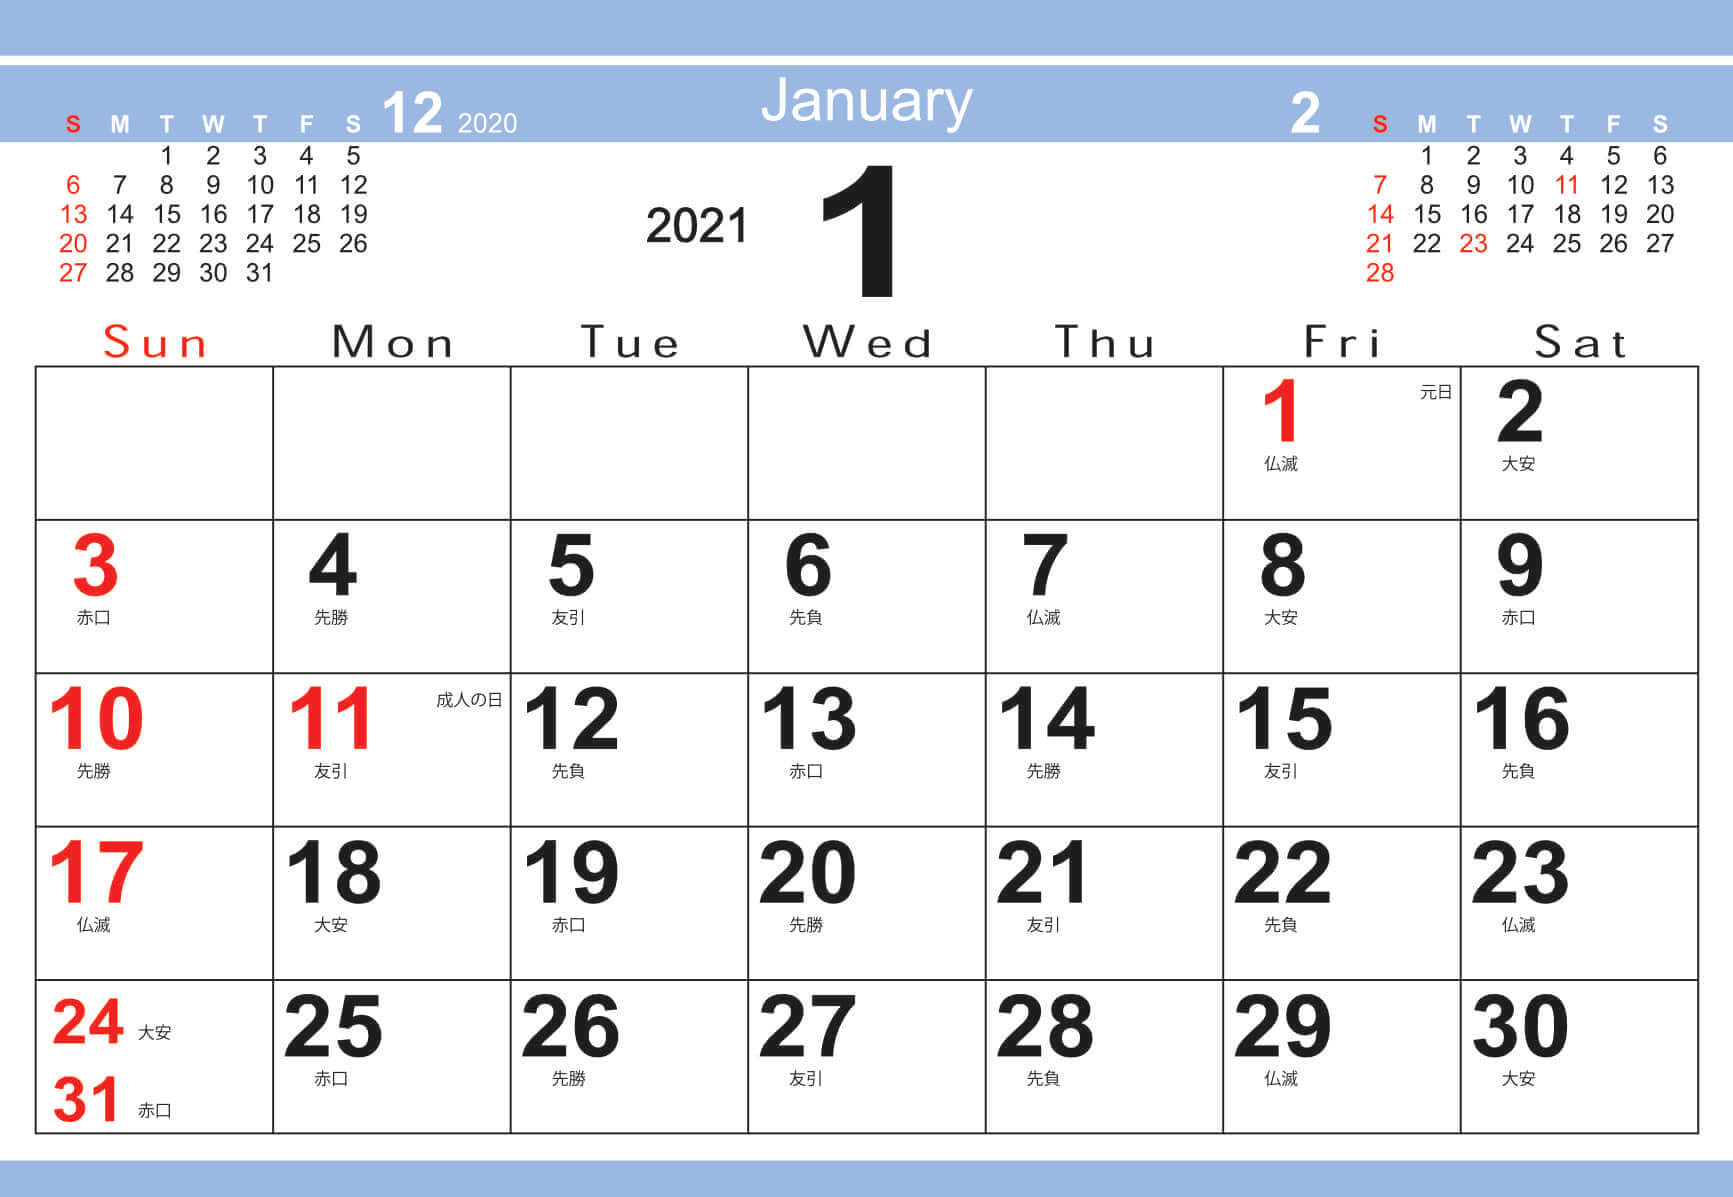 ? カレンダー 2021 無料 シンプル - プログラム - ニュース-2021年度カレンダー 印刷用 無料